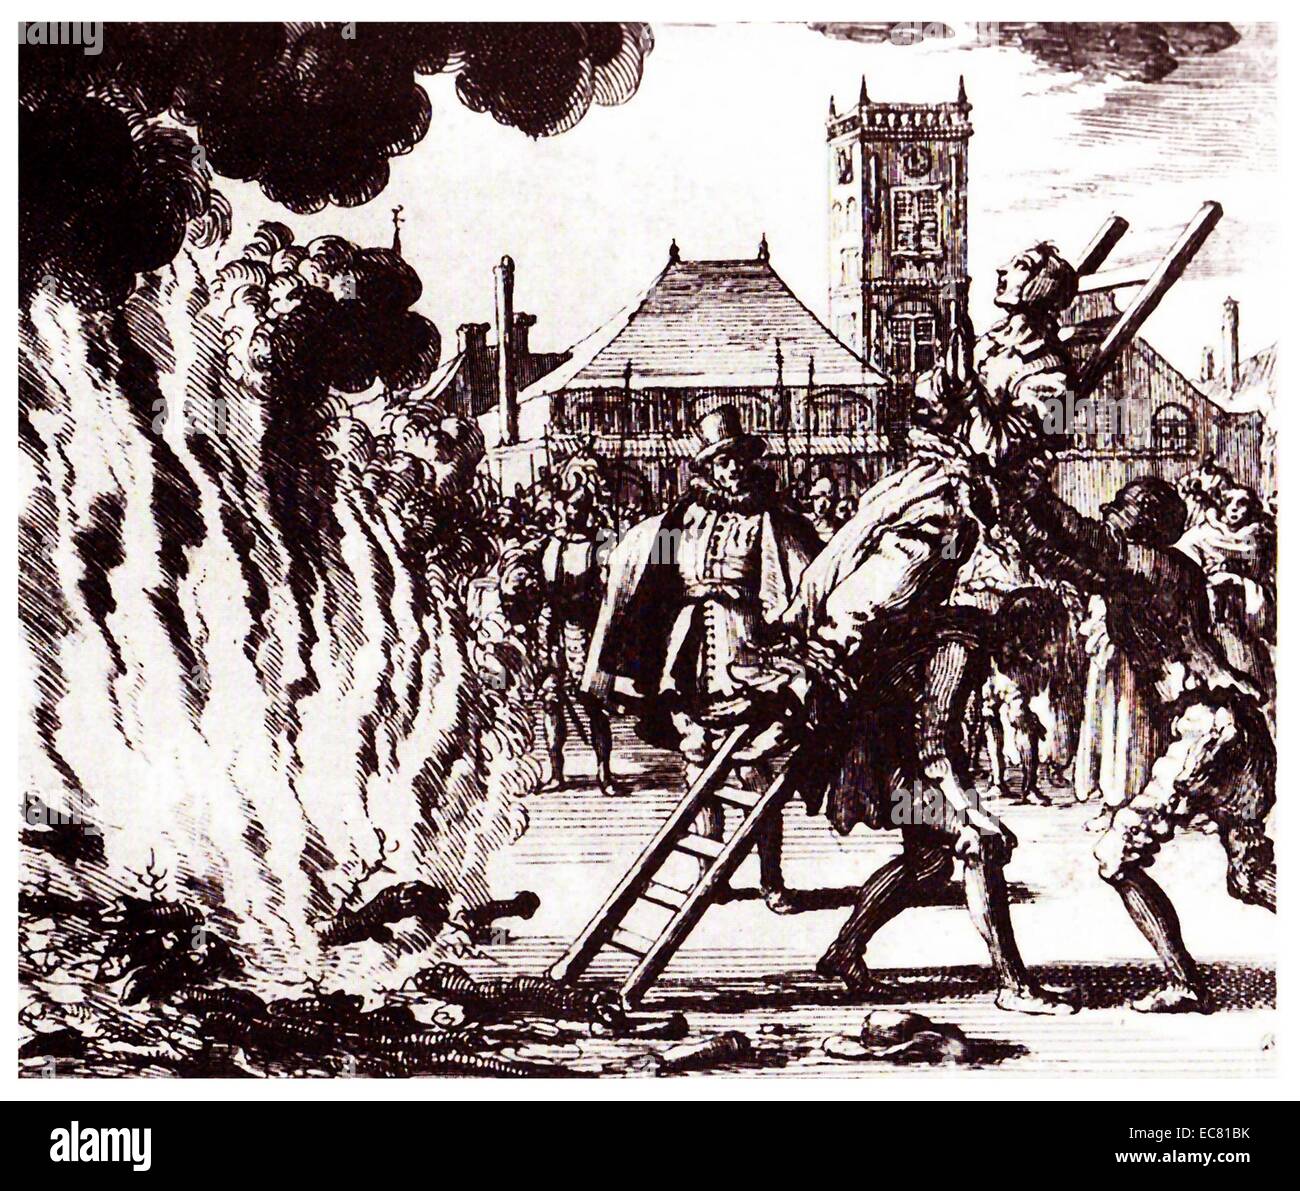 L'incendie d'une 16ème siècle anabaptistes hollandais, Anneken Hendriks, qui a été accusé par l'Inquisition espagnole avec l'hérésie. Amsterdam, 1571. Gravure de Jan Luyken Banque D'Images